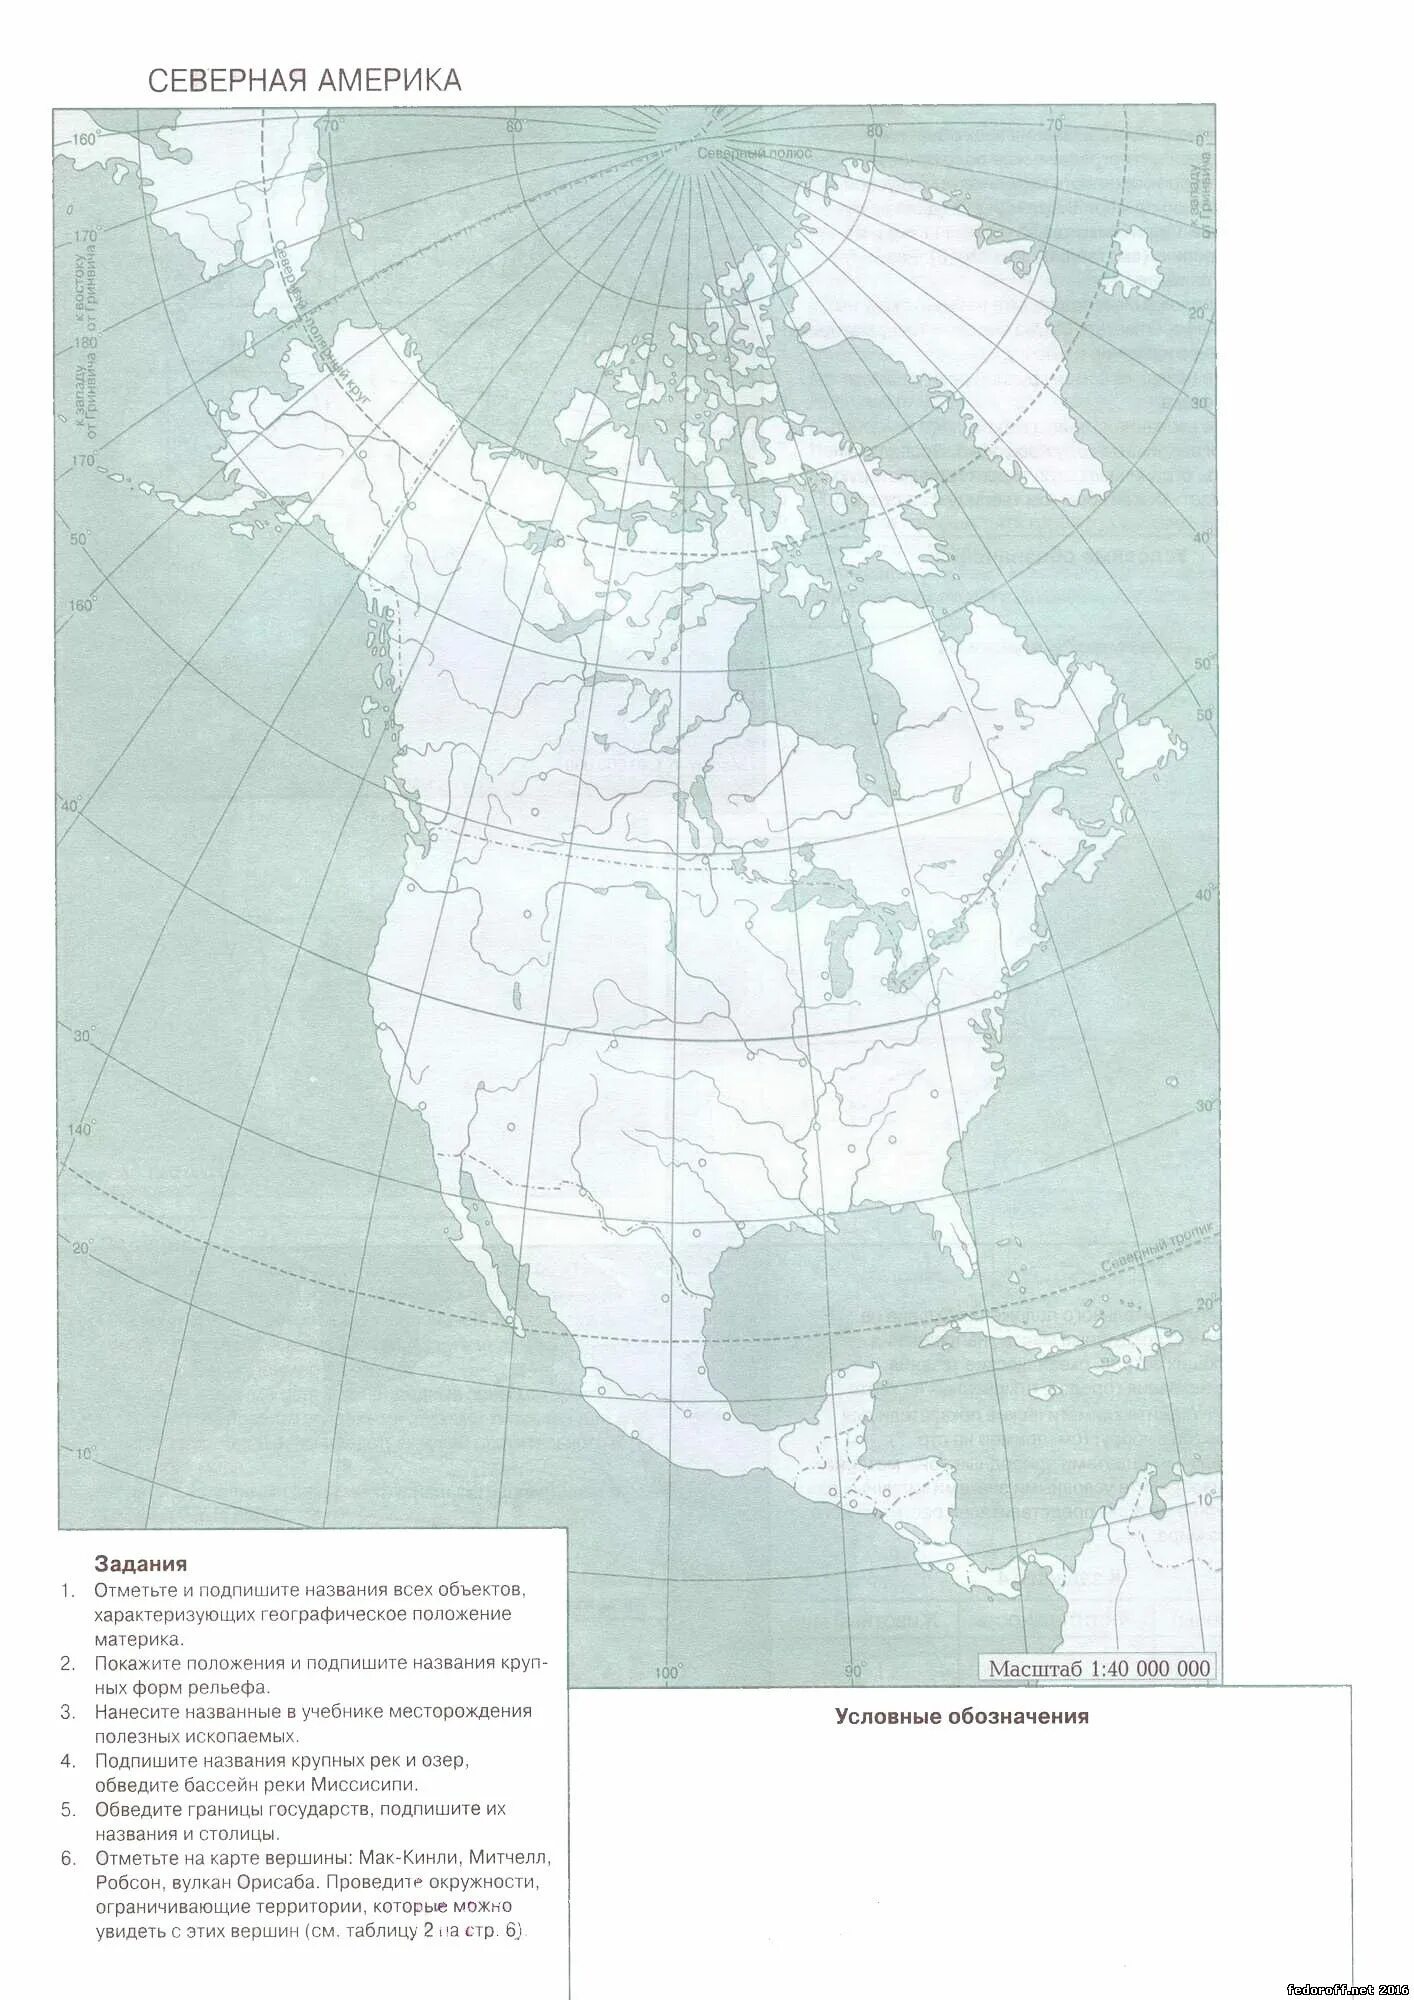 Контурные карты по географии 7 класс Просвещение Северная Америка. Природные зоны Северной Америки контурная карта. Контурная карта по географии 7 класс Северная Америка природные зоны. Контурная карта по географии Северная Америка. Объекты северной америки 7 класс контурные карты